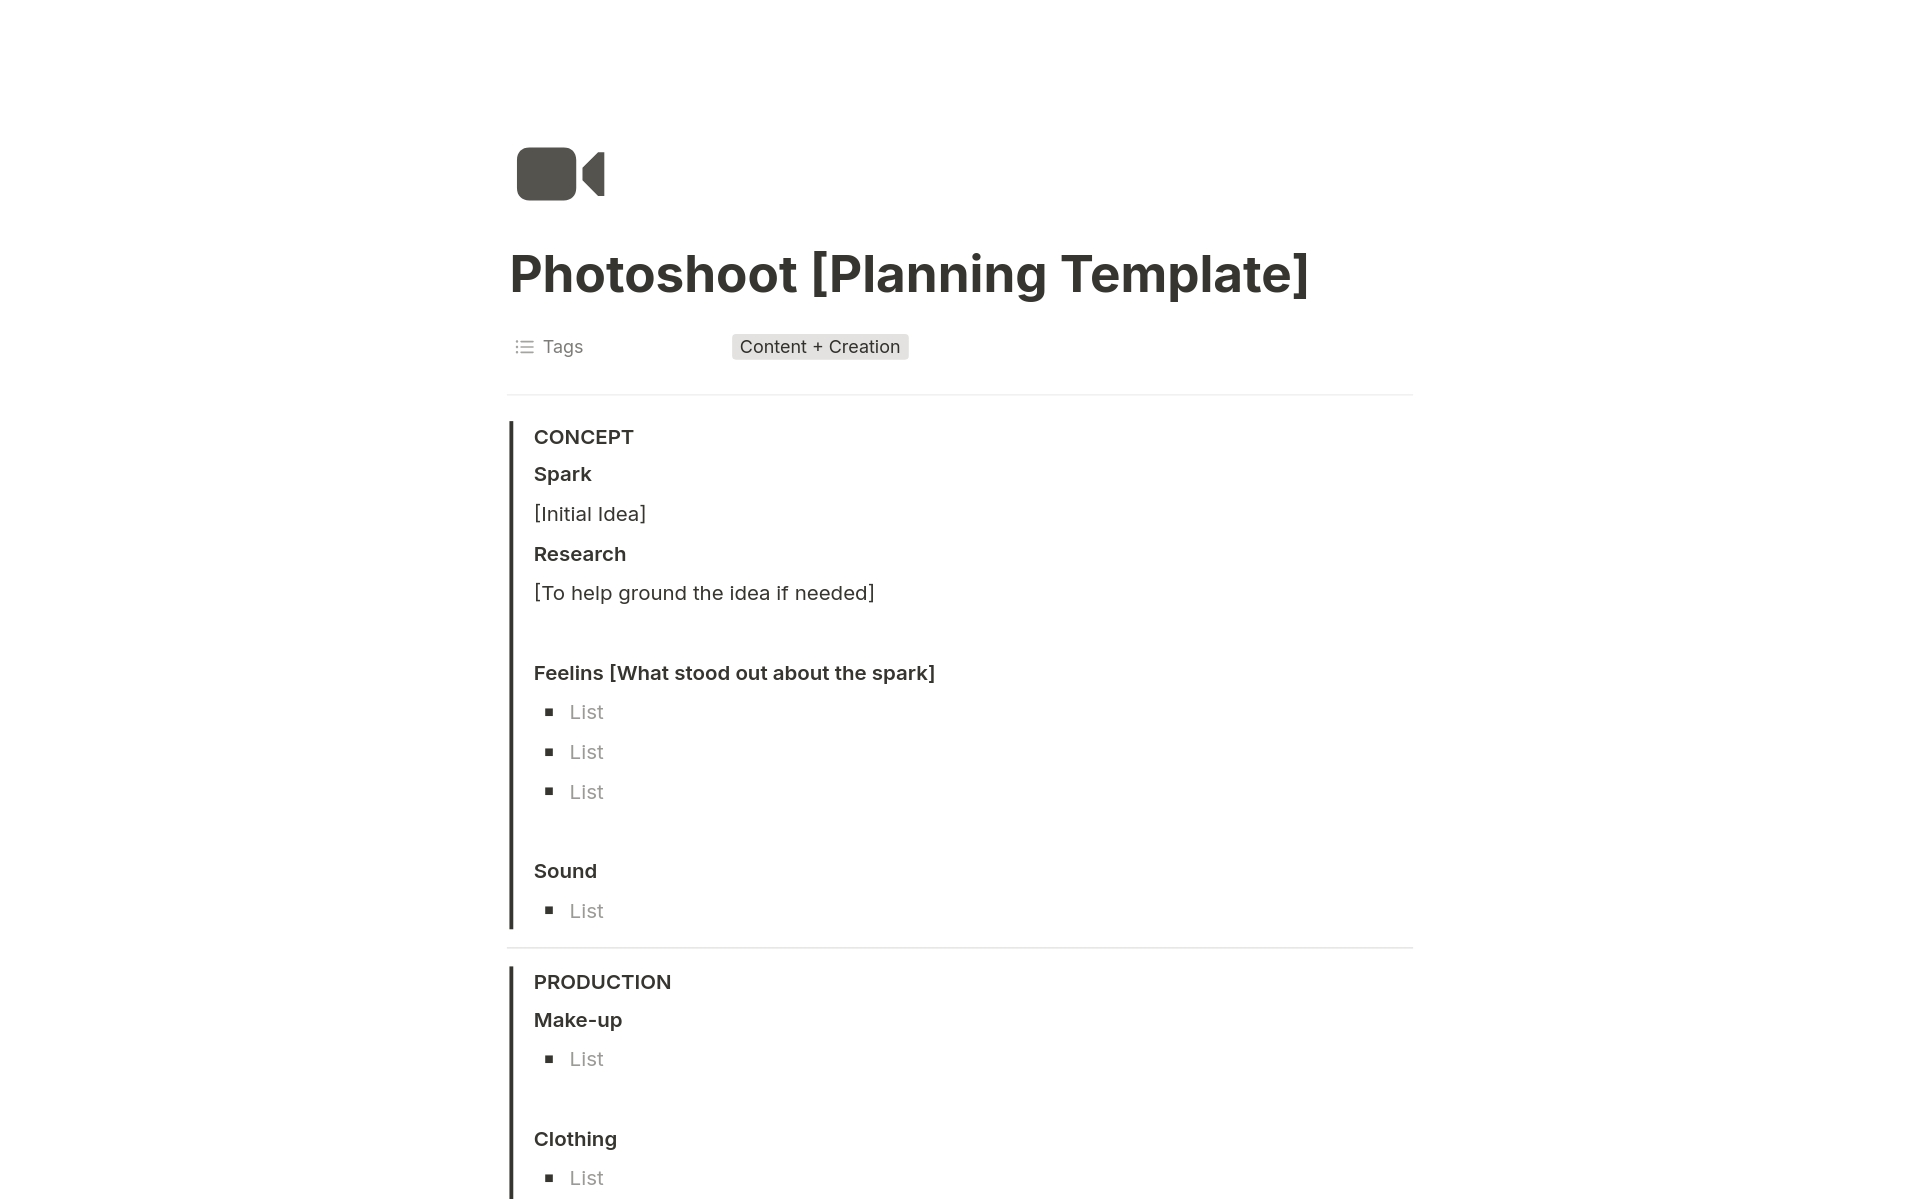 Vista previa de una plantilla para Photoshoot Planning